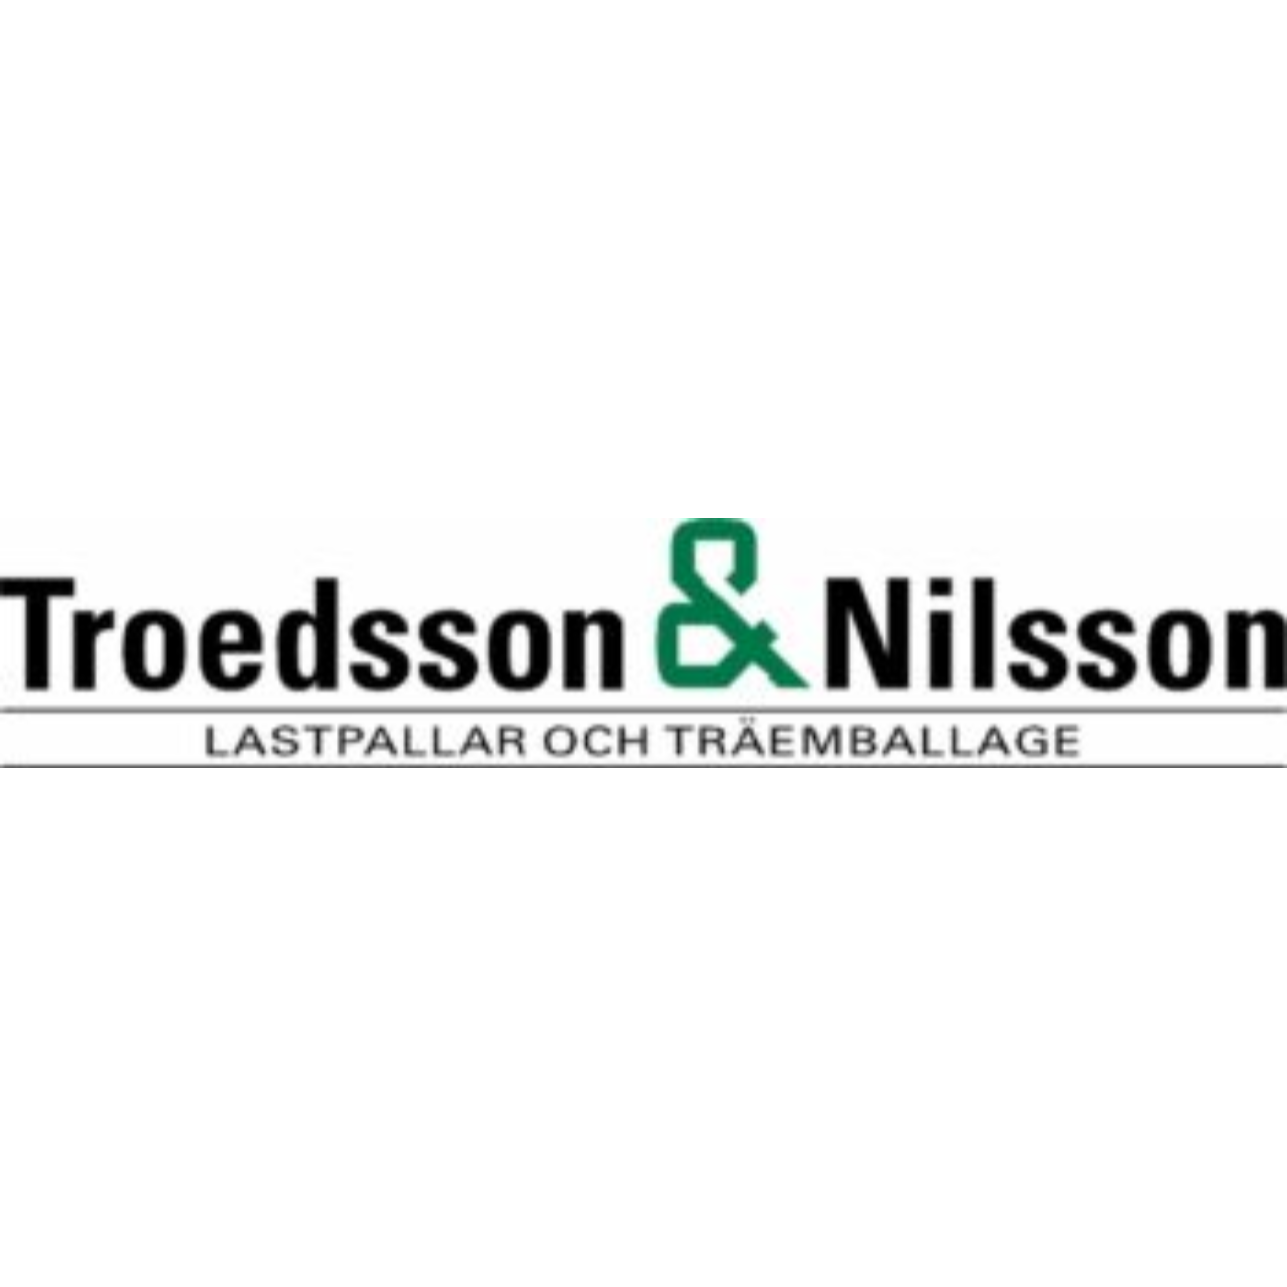 Troedsson & Nilsson AB Logo